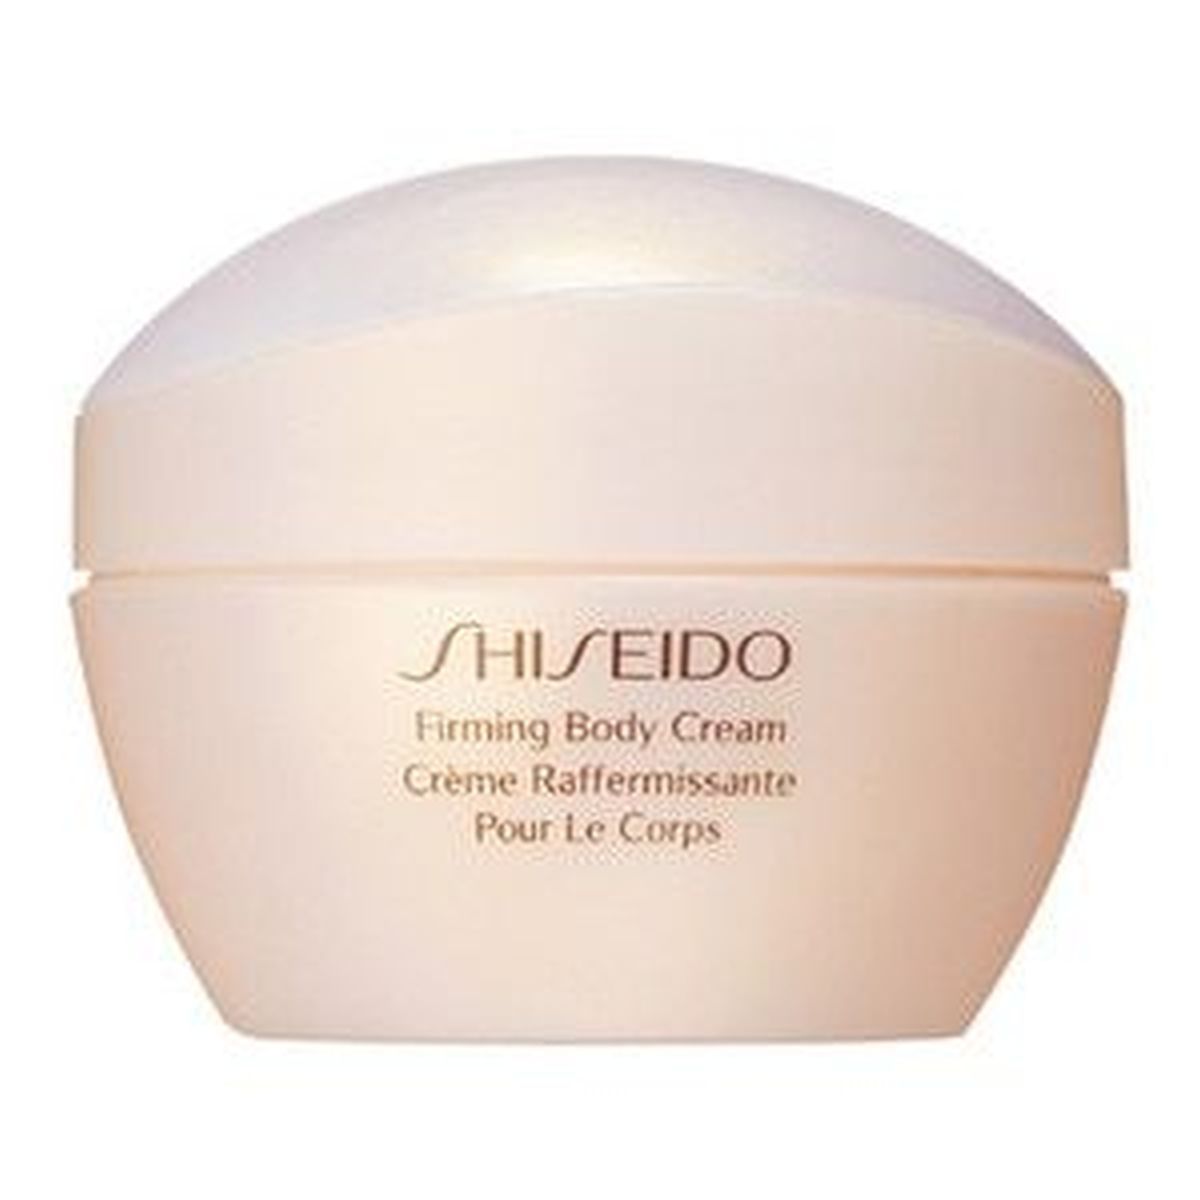 Крем shiseido отзывы. Крема шисейдо антивозрастные. Shiseido антивозрастной крем. Крем для лица шисейдо антивозрастной. Крем шисейдо для лица увлажняющий.